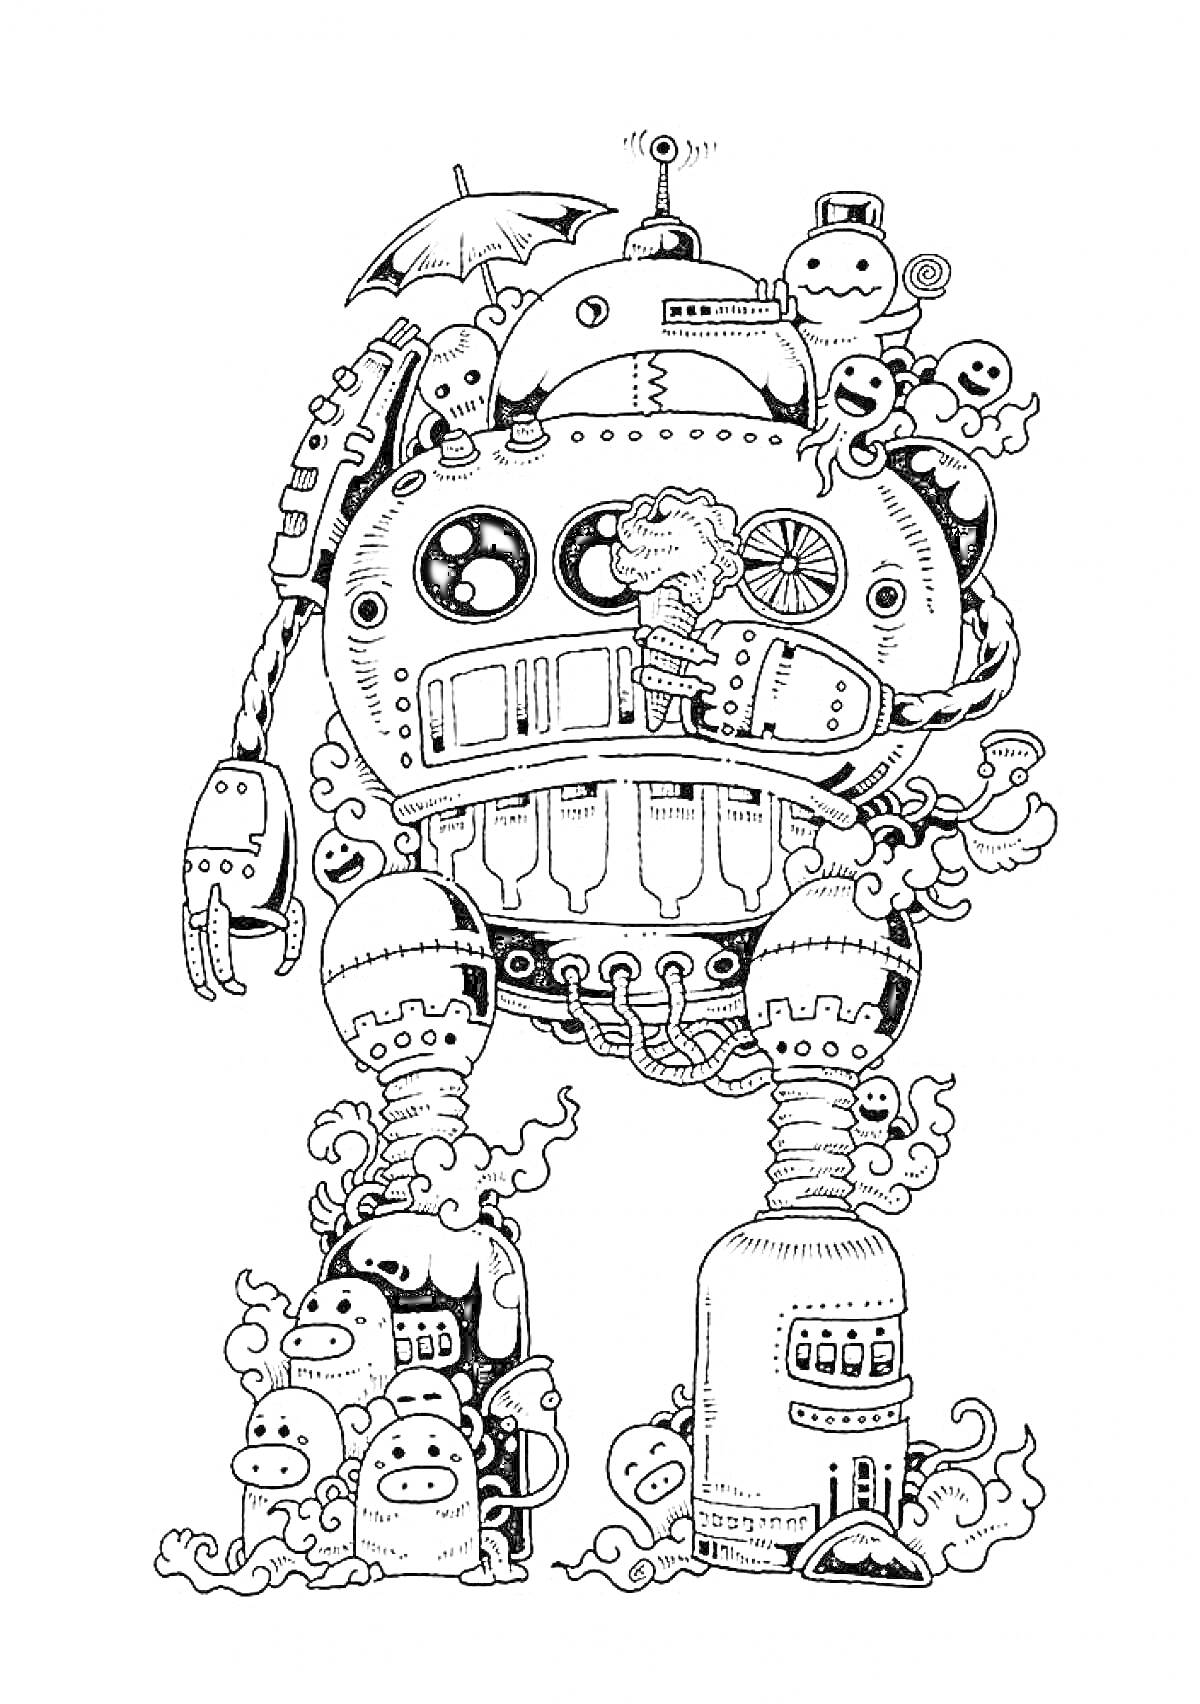 Раскраска Робот с множеством кнопок и датчиков, окруженный улыбающимися облаками и маленькими призраками с зонтиком на верхушке